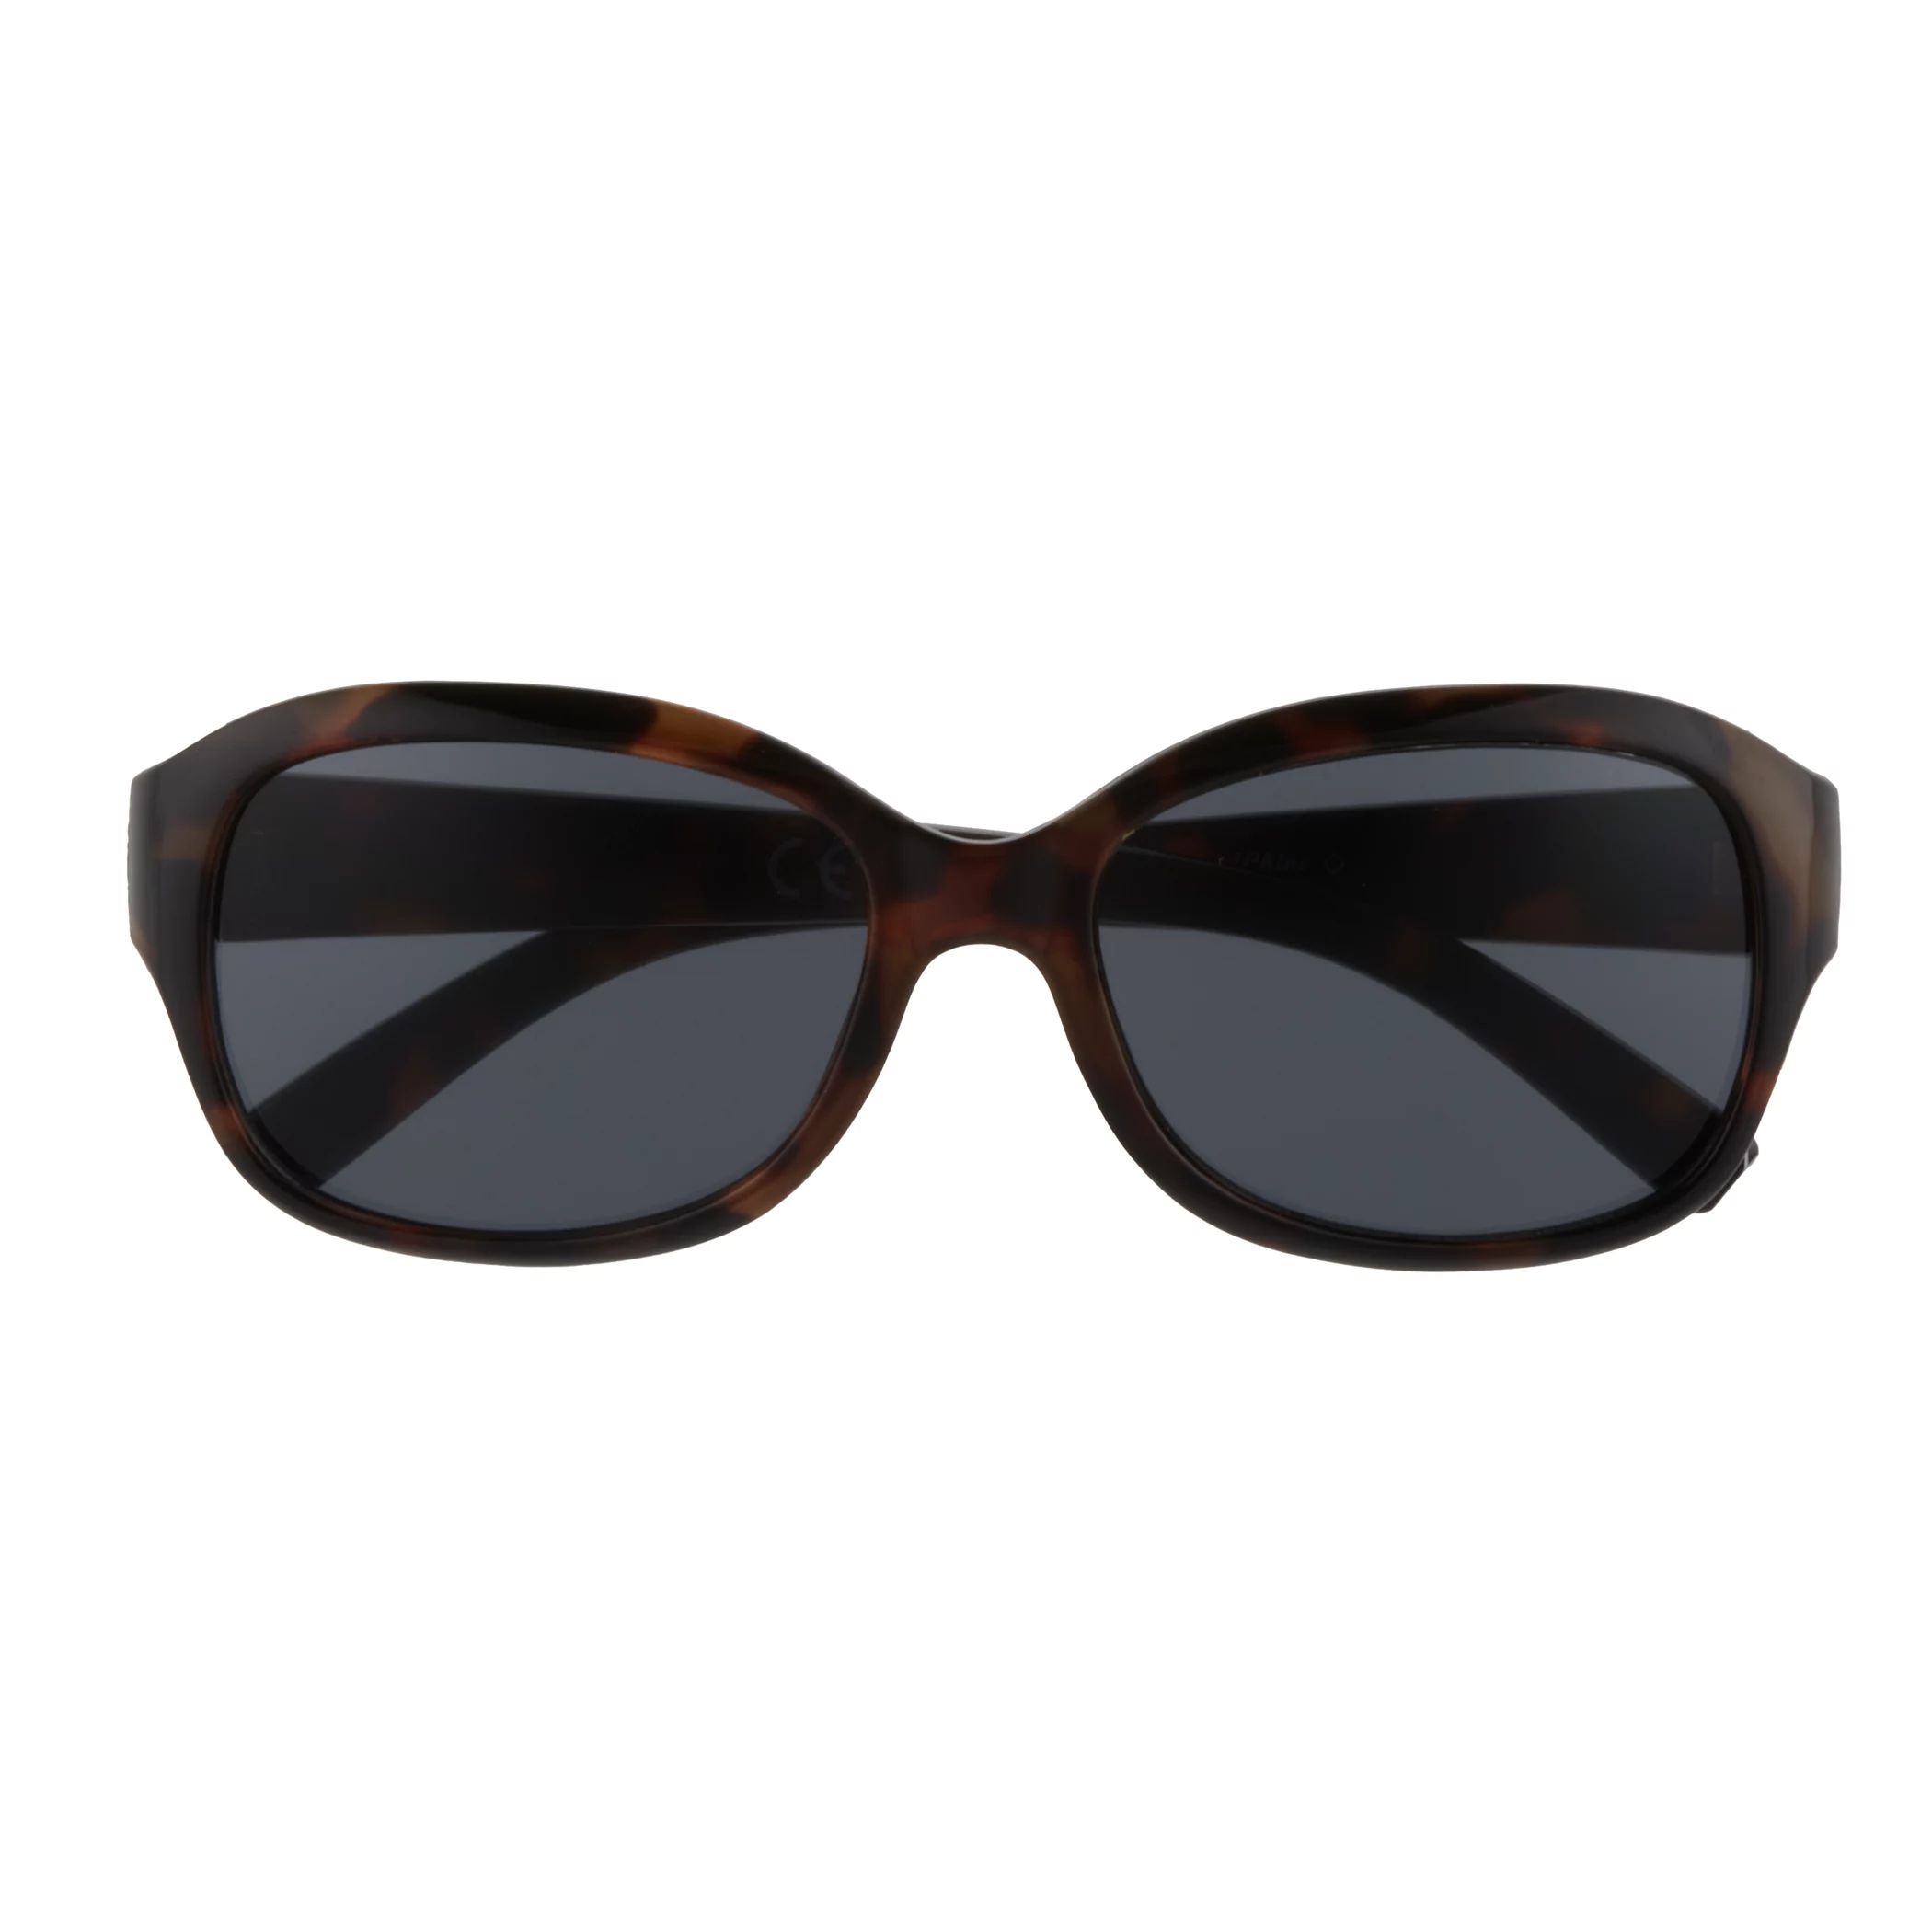 Женские прямоугольные солнцезащитные очки Sonoma Goods For Life 54 мм Sonoma Goods For Life, черный